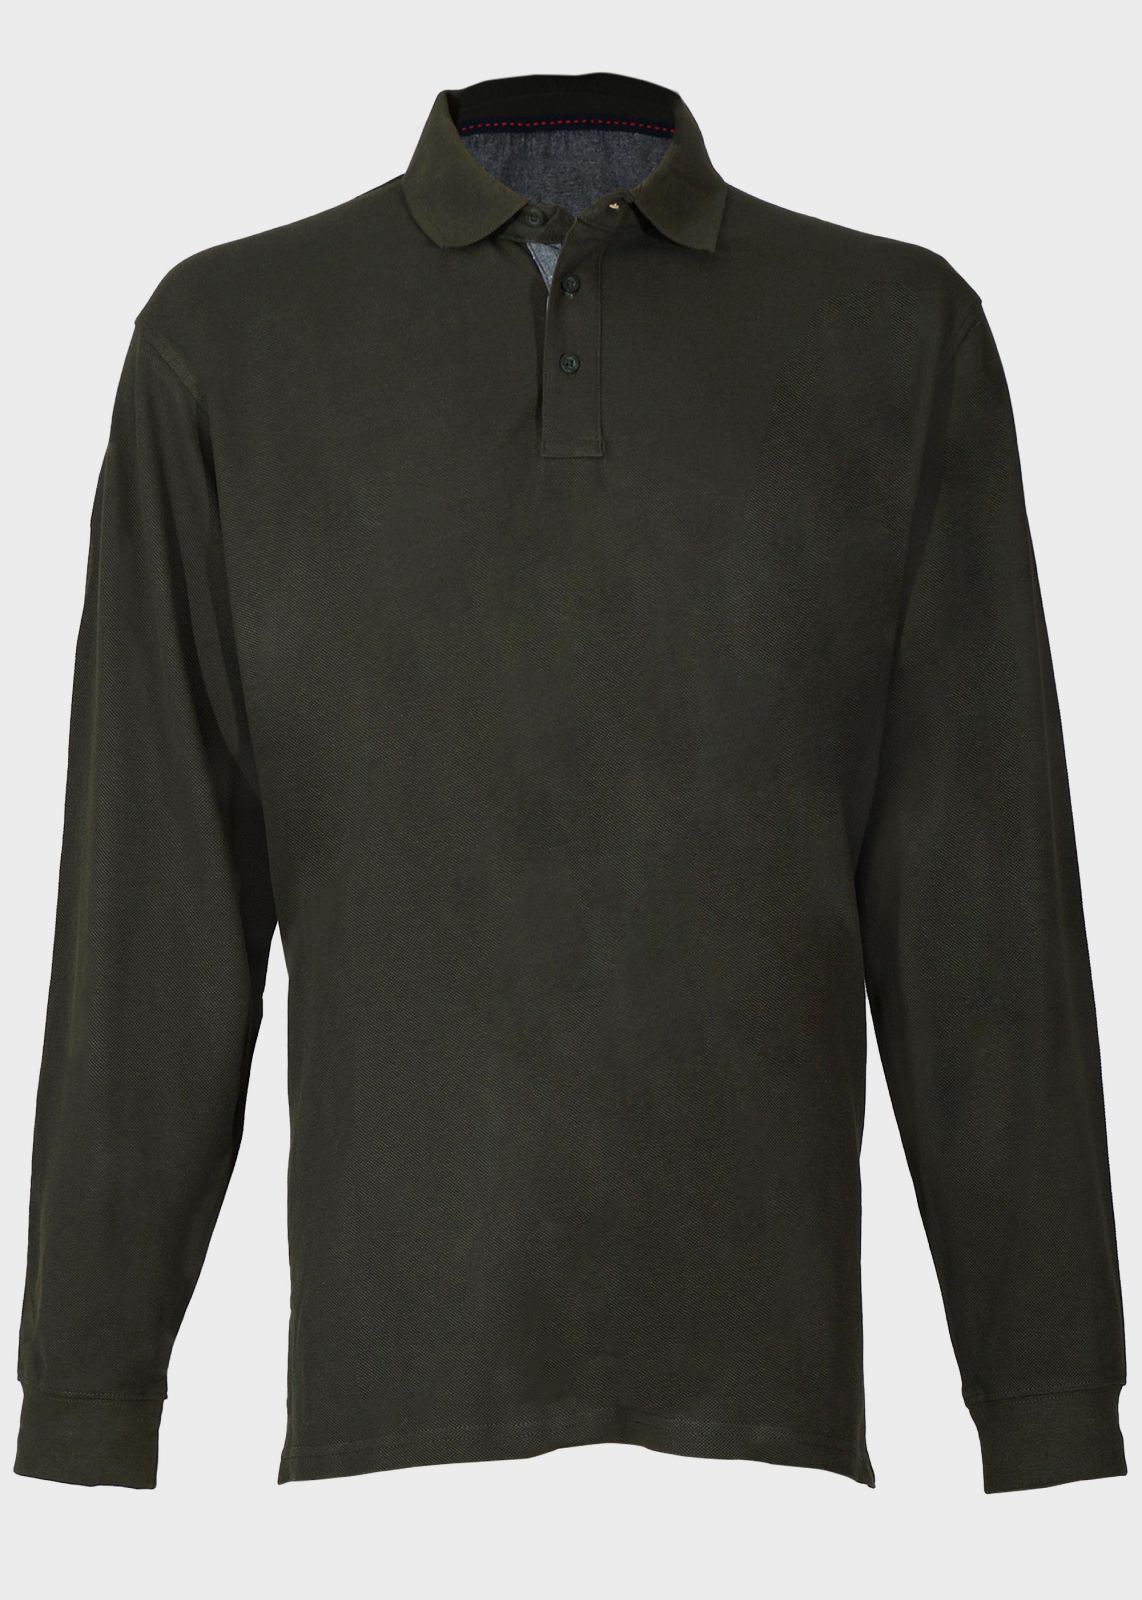 Ανδρική μπλούζα τύπου polo μονόχρωμη μακρύ μανίκι.Oversize Collection ΧΑΚΙ